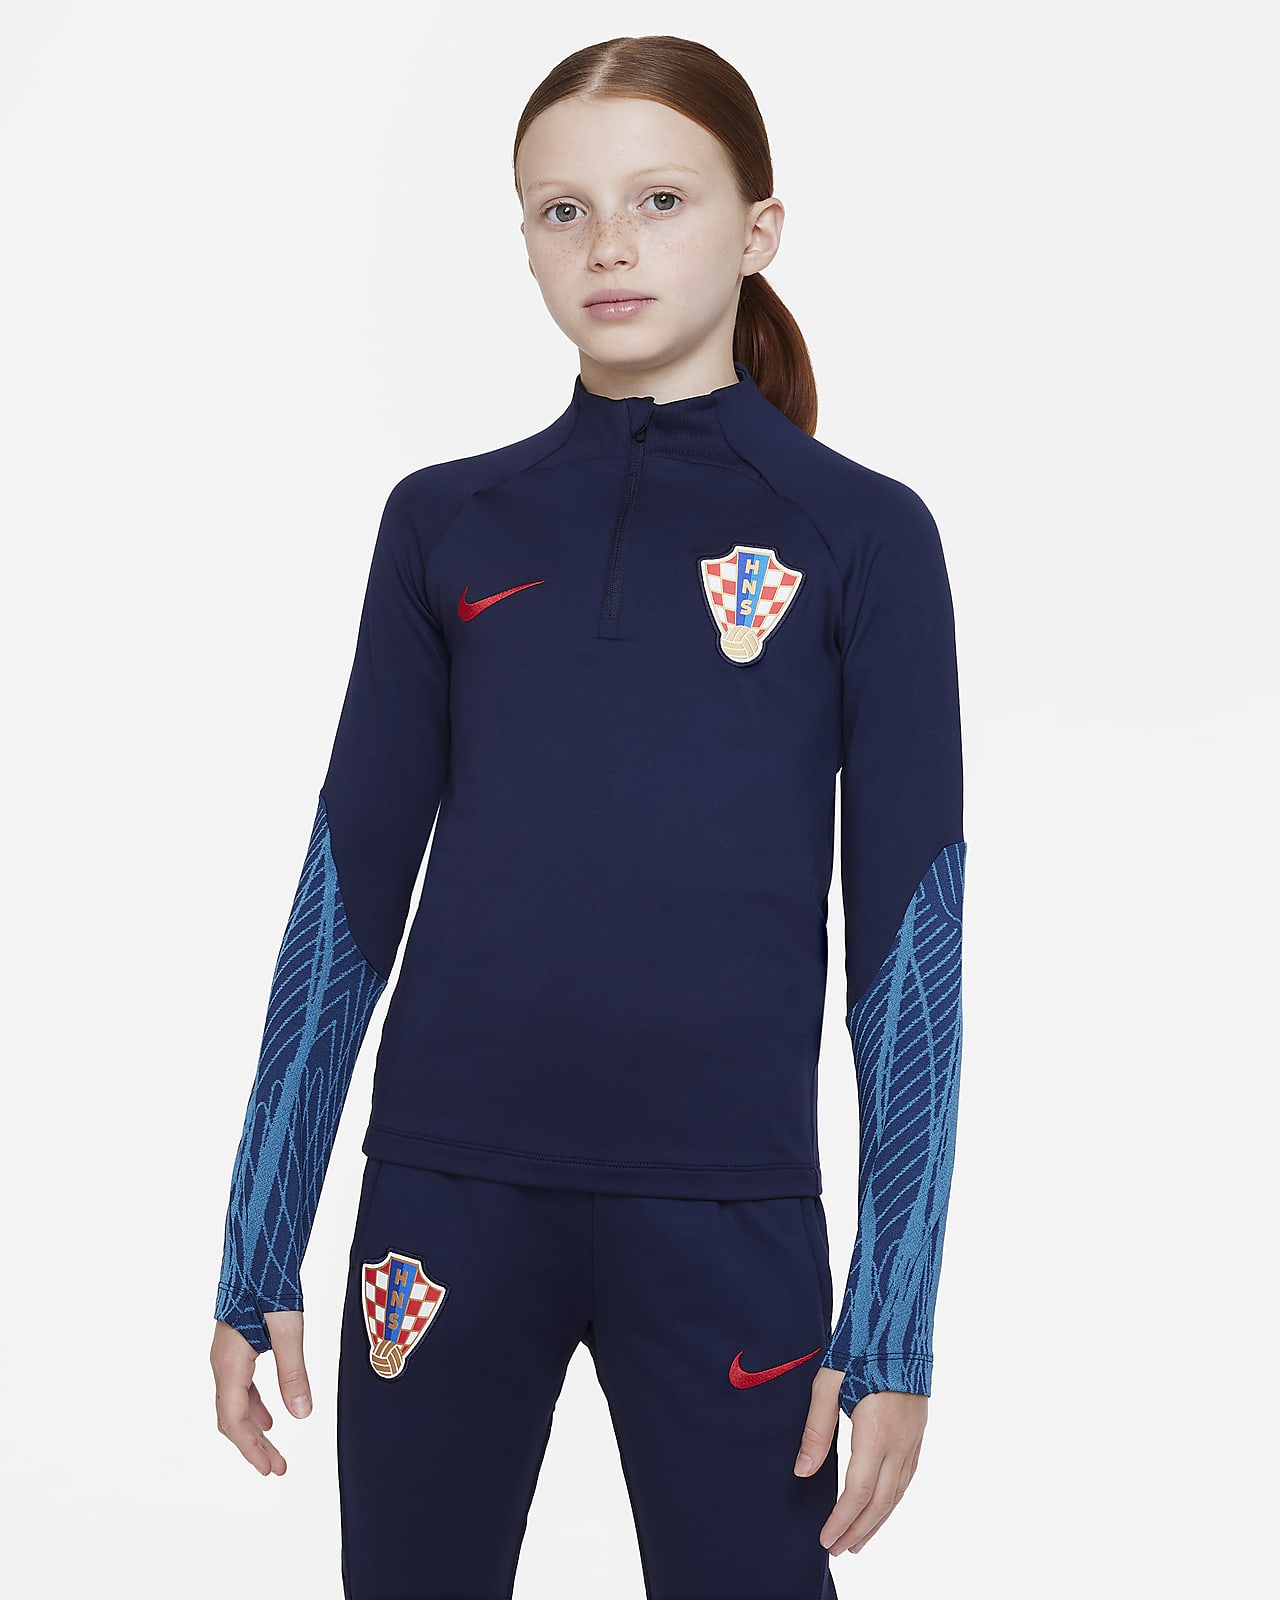 Kroatië Strike Nike Dri-FIT knit voetbaltrainingstop voor kids